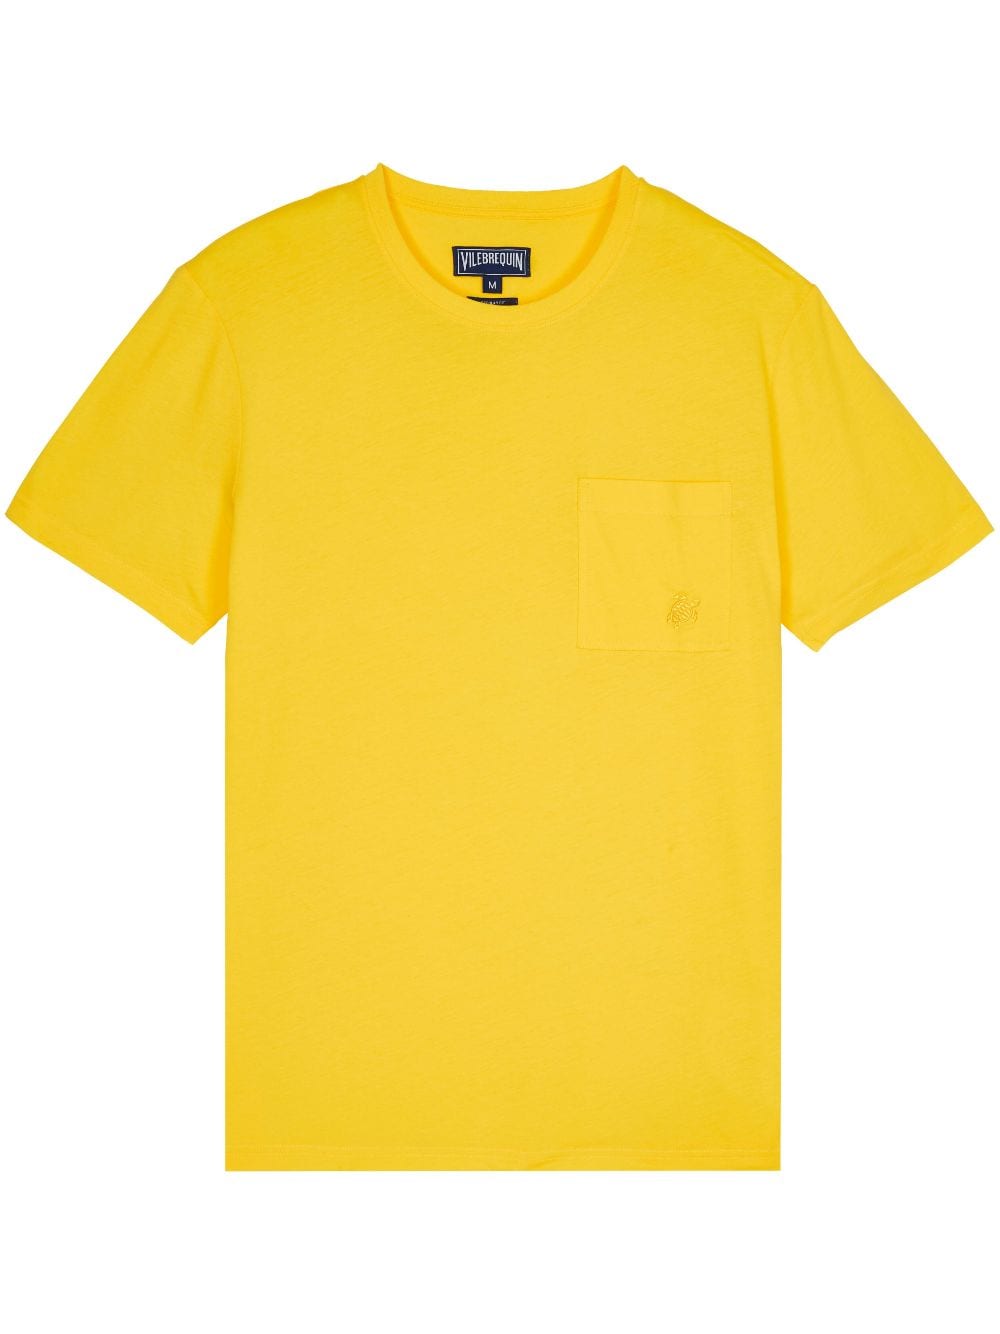 Vilebrequin Tee Shirt In Yellow